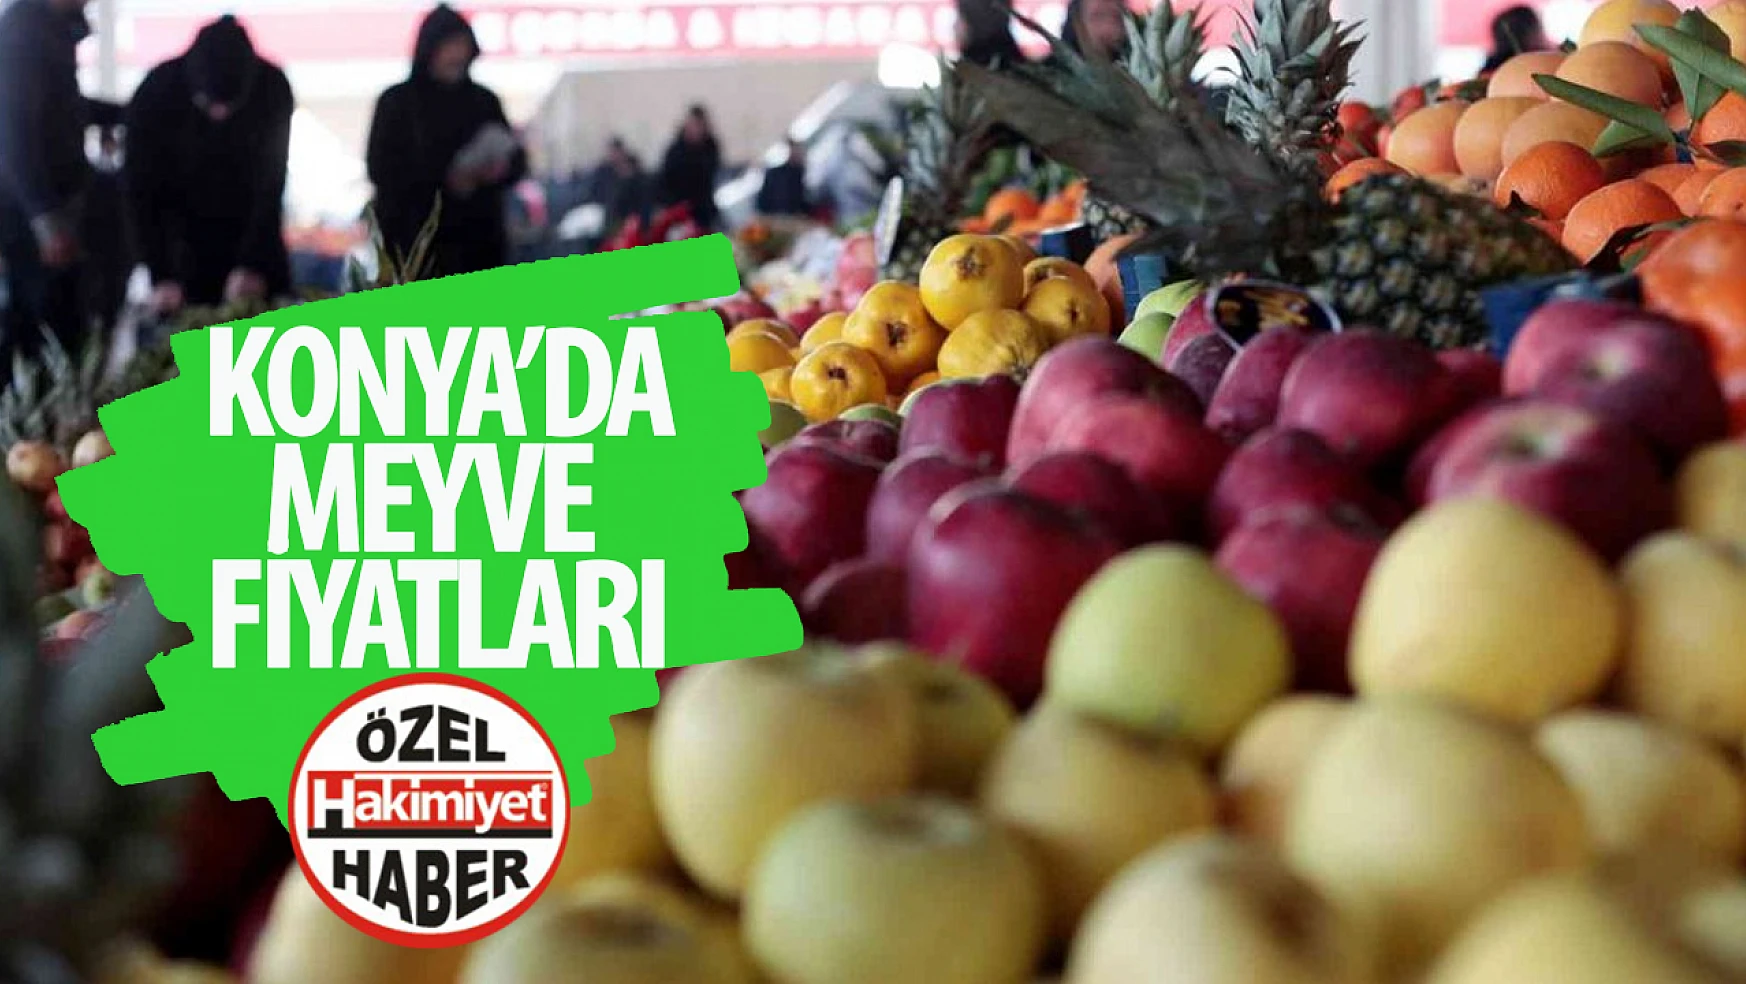 Konya Halinde Meyve Fiyatları Değerlendirildi: Fiyatlar Karışık